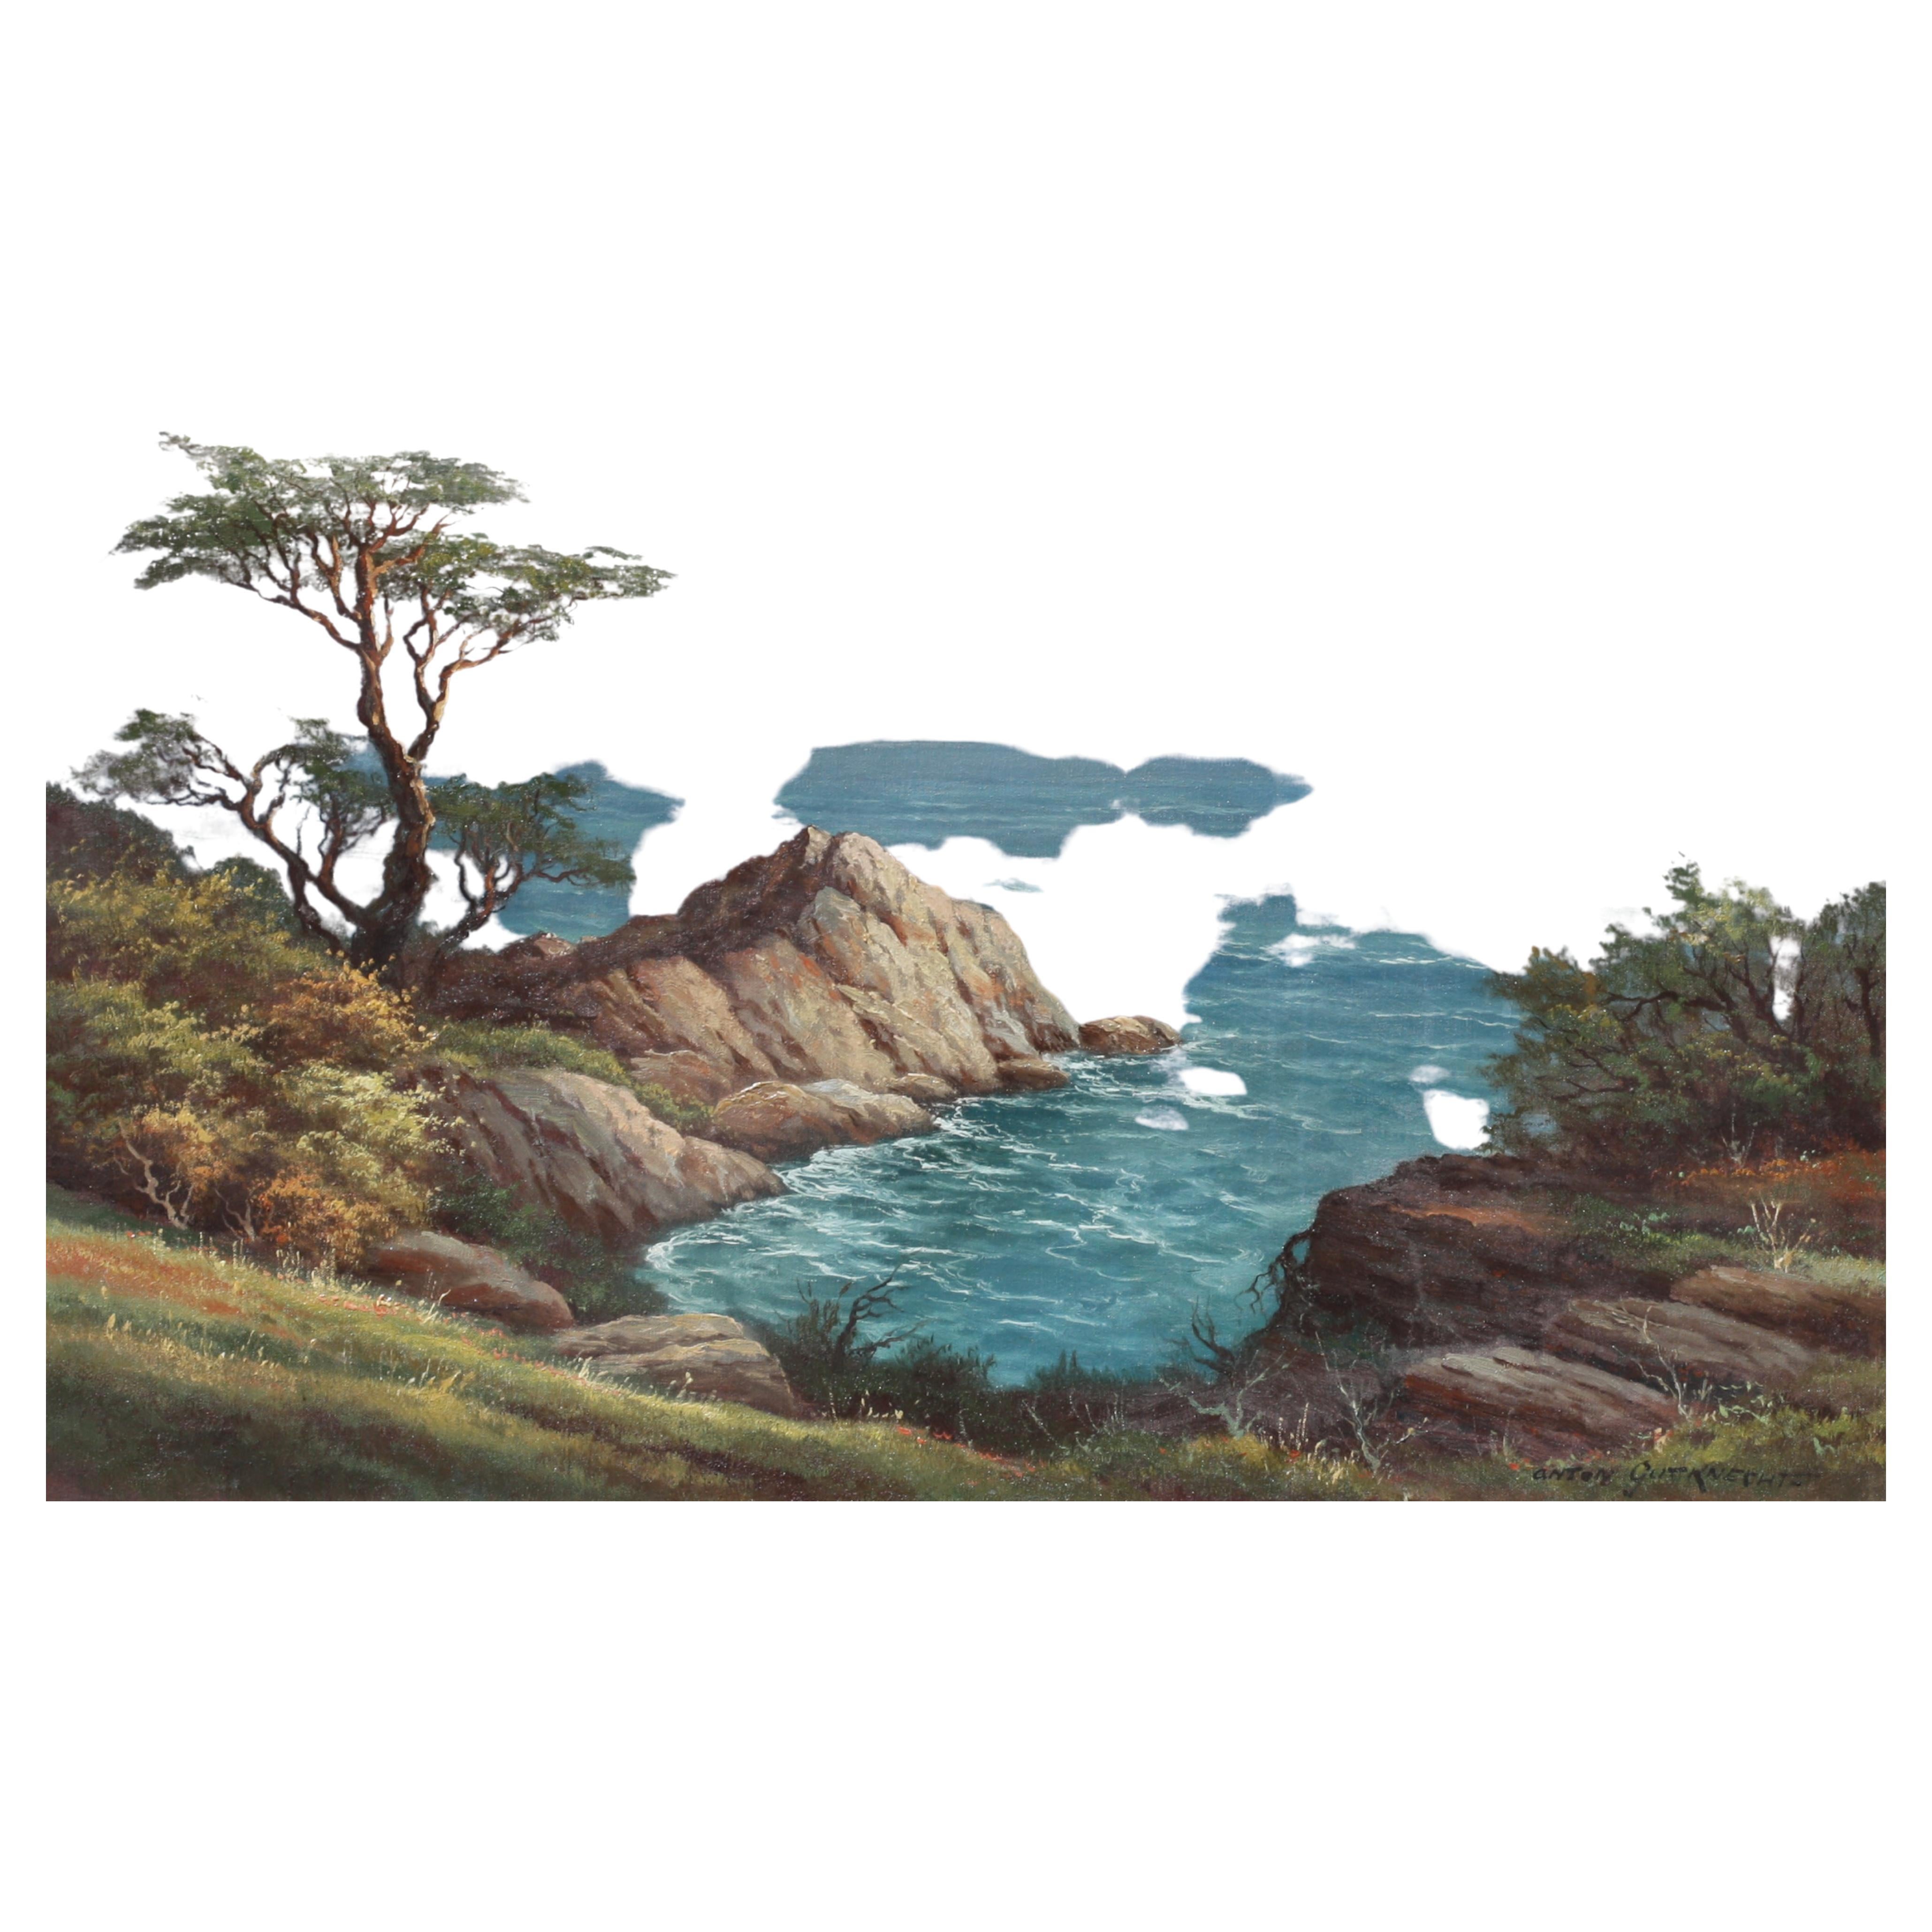 Monterey, Zypressenbaum an der Ocean Side